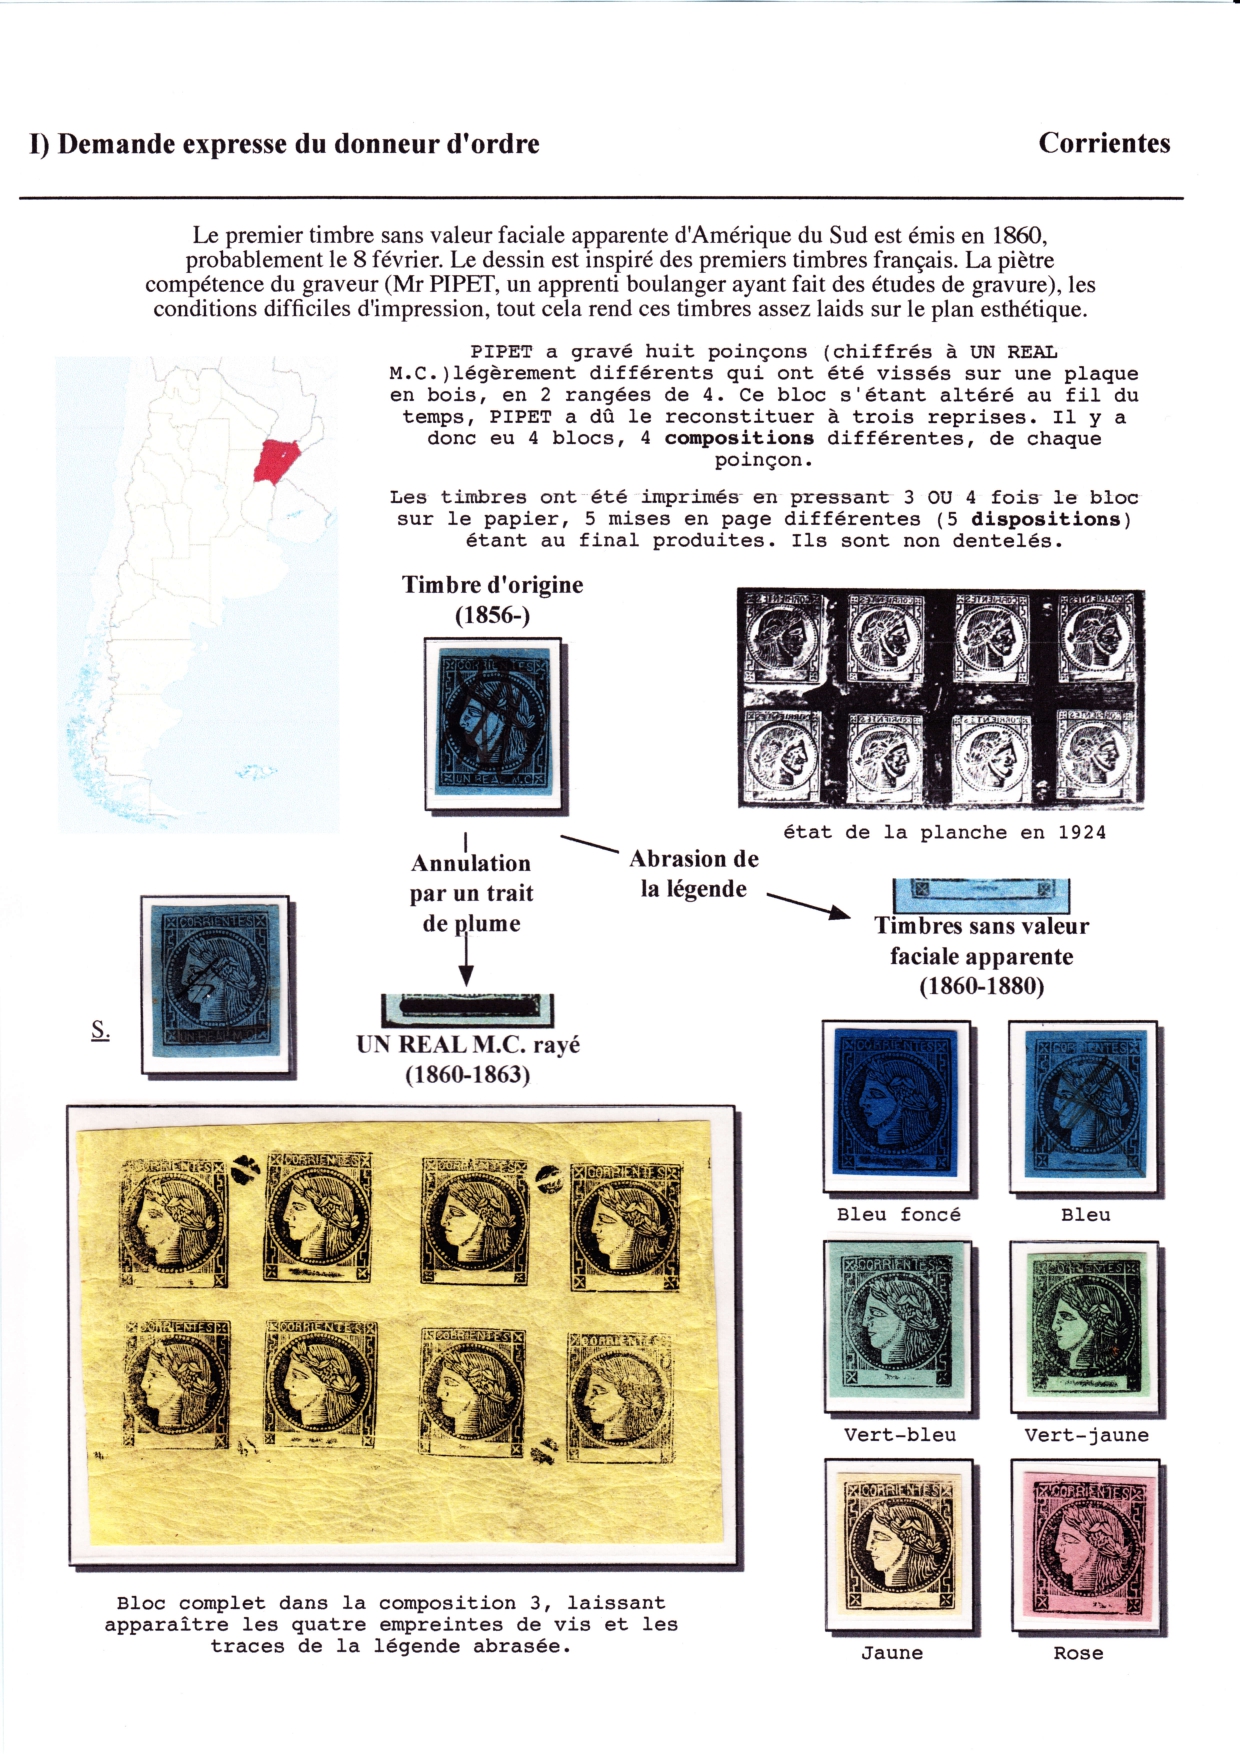 Les débuts des timbres sans valeur faciale apparente p. 15